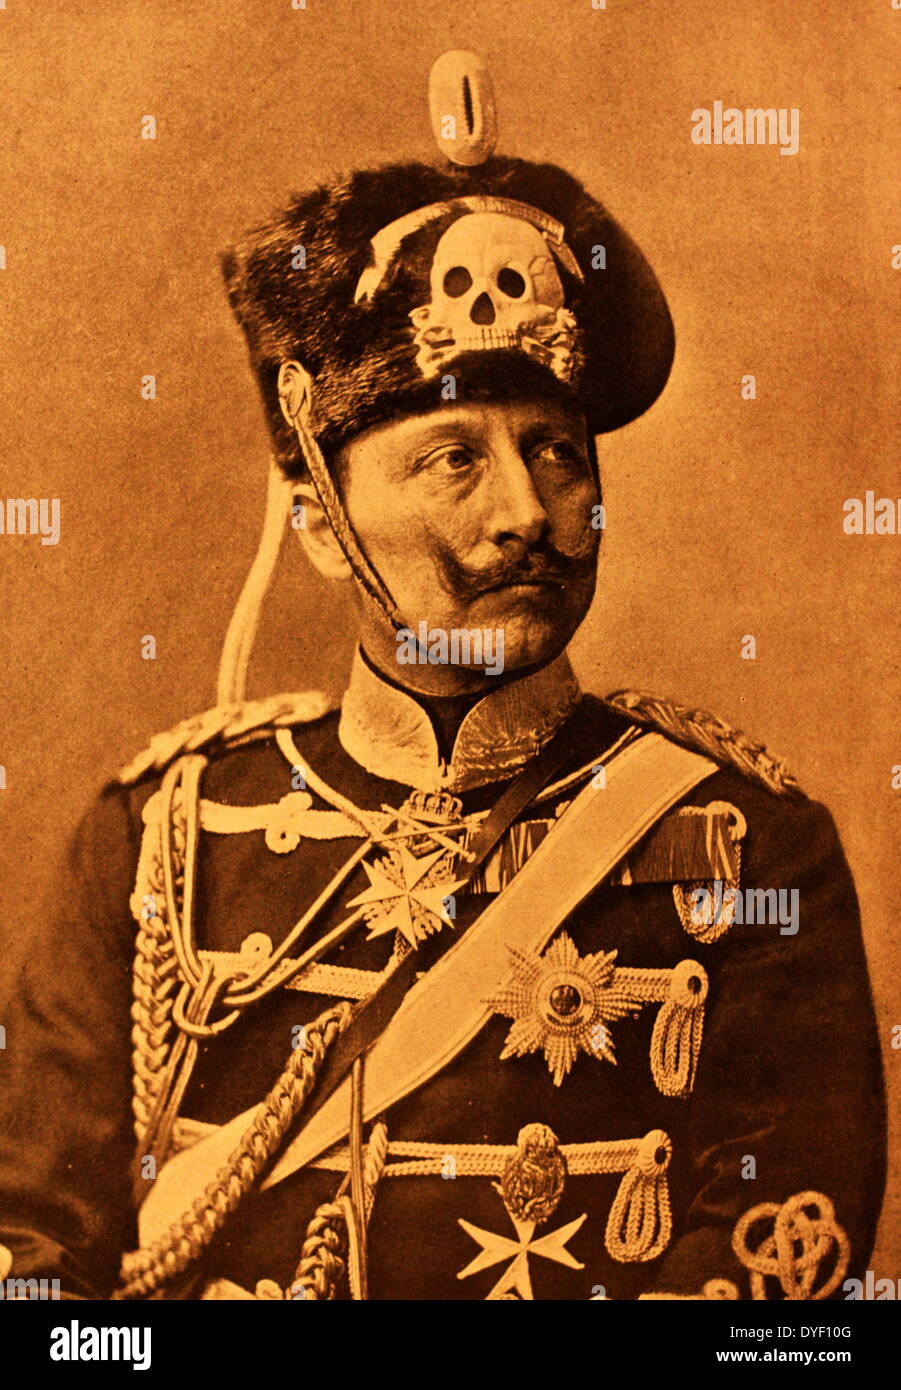 Portrait Foto von Kaiser Wilhelm III., (Friedrich Wilhelm Viktor Albert von Preußen). Zwischen 1859 - 1941 lebte, und war der letzte deutsche Kaiser und König von Preußen. Er regierte im Deutschen Reich und dem Königreich Preußen von Juni 1888 bis November 1918, war der Enkel von der britischen Königin Victoria. Stockfoto